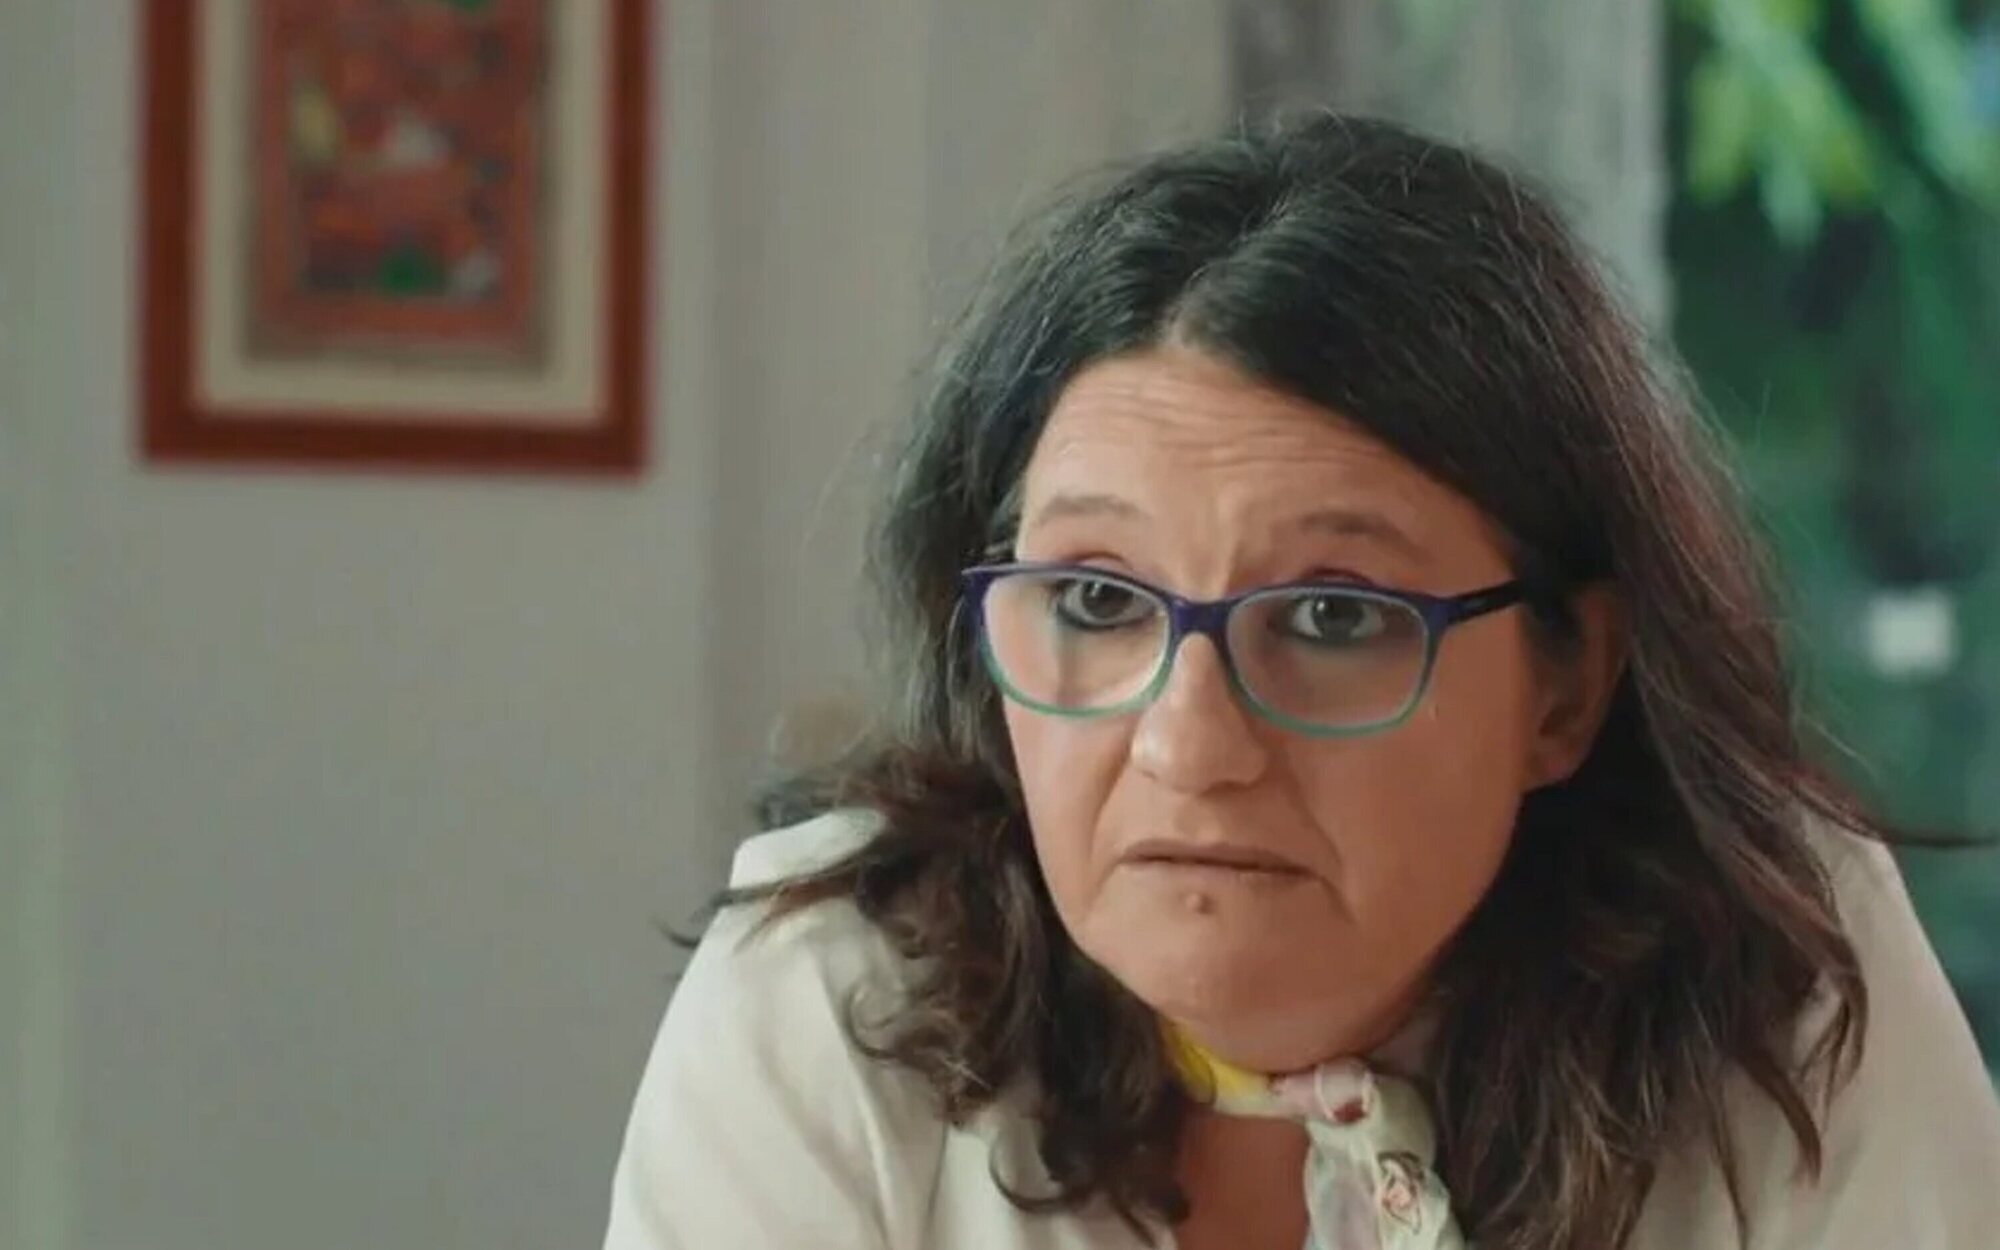 Mónica Oltra da las claves de su imputación en 'Salvados': "Esto no es 'House of Cards'"